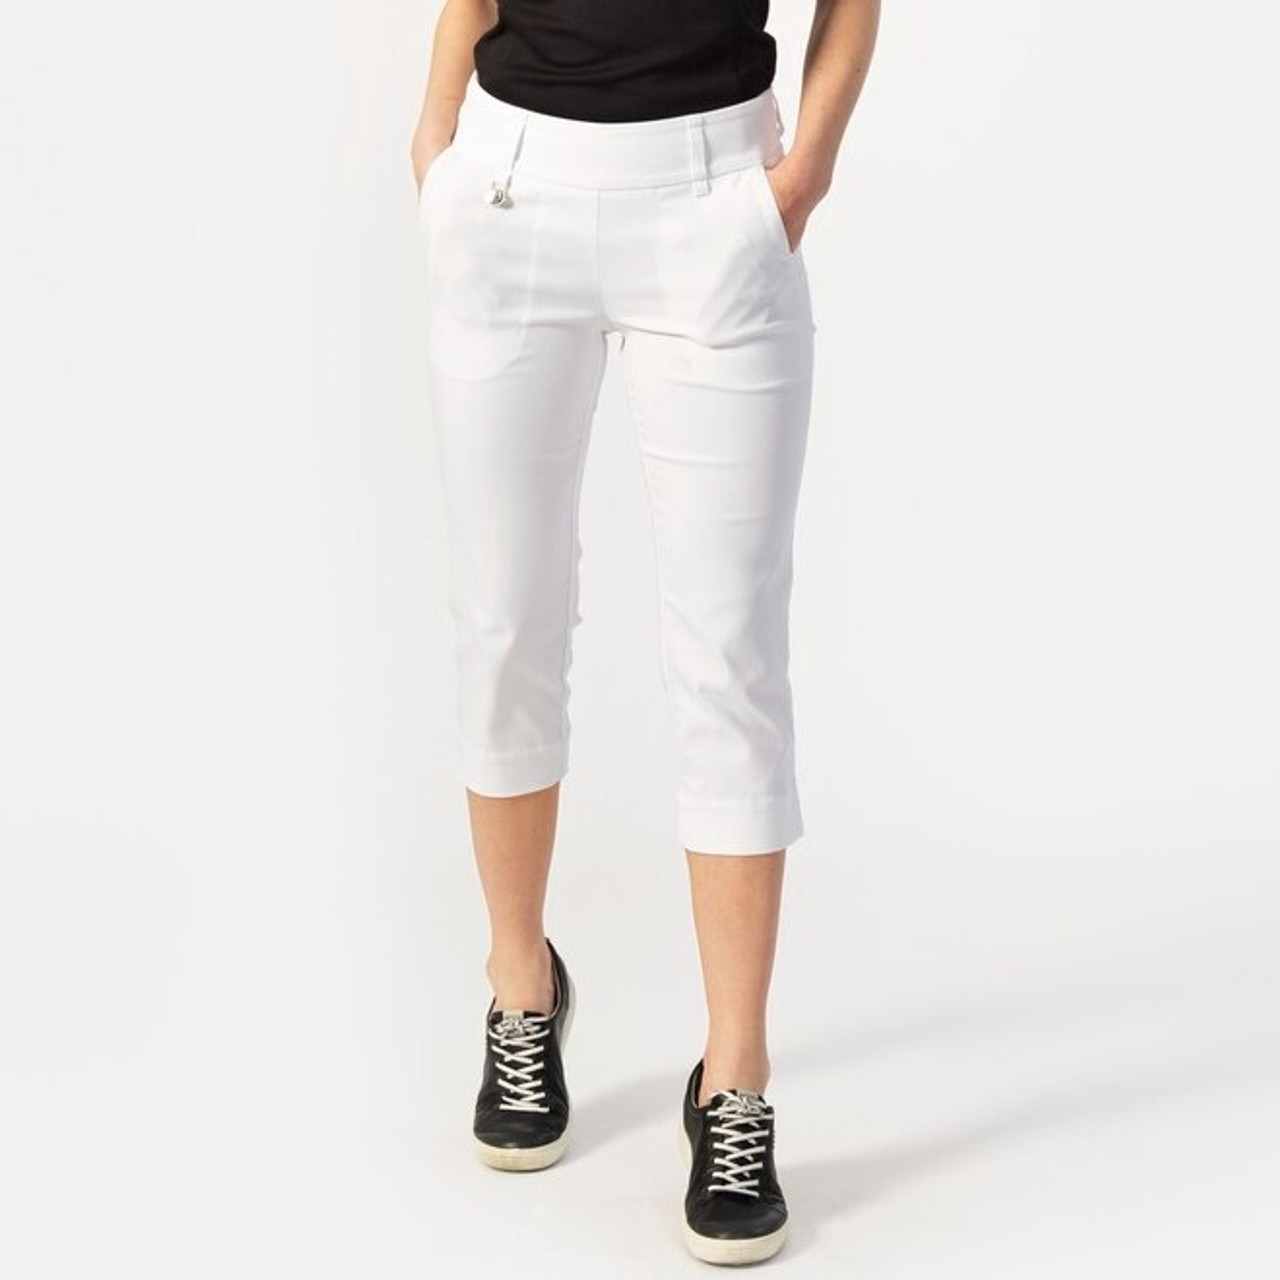 Buy Diaz Women's Regular Fit Plain 3/4th Capri Pants (White, Magenta,XL) at